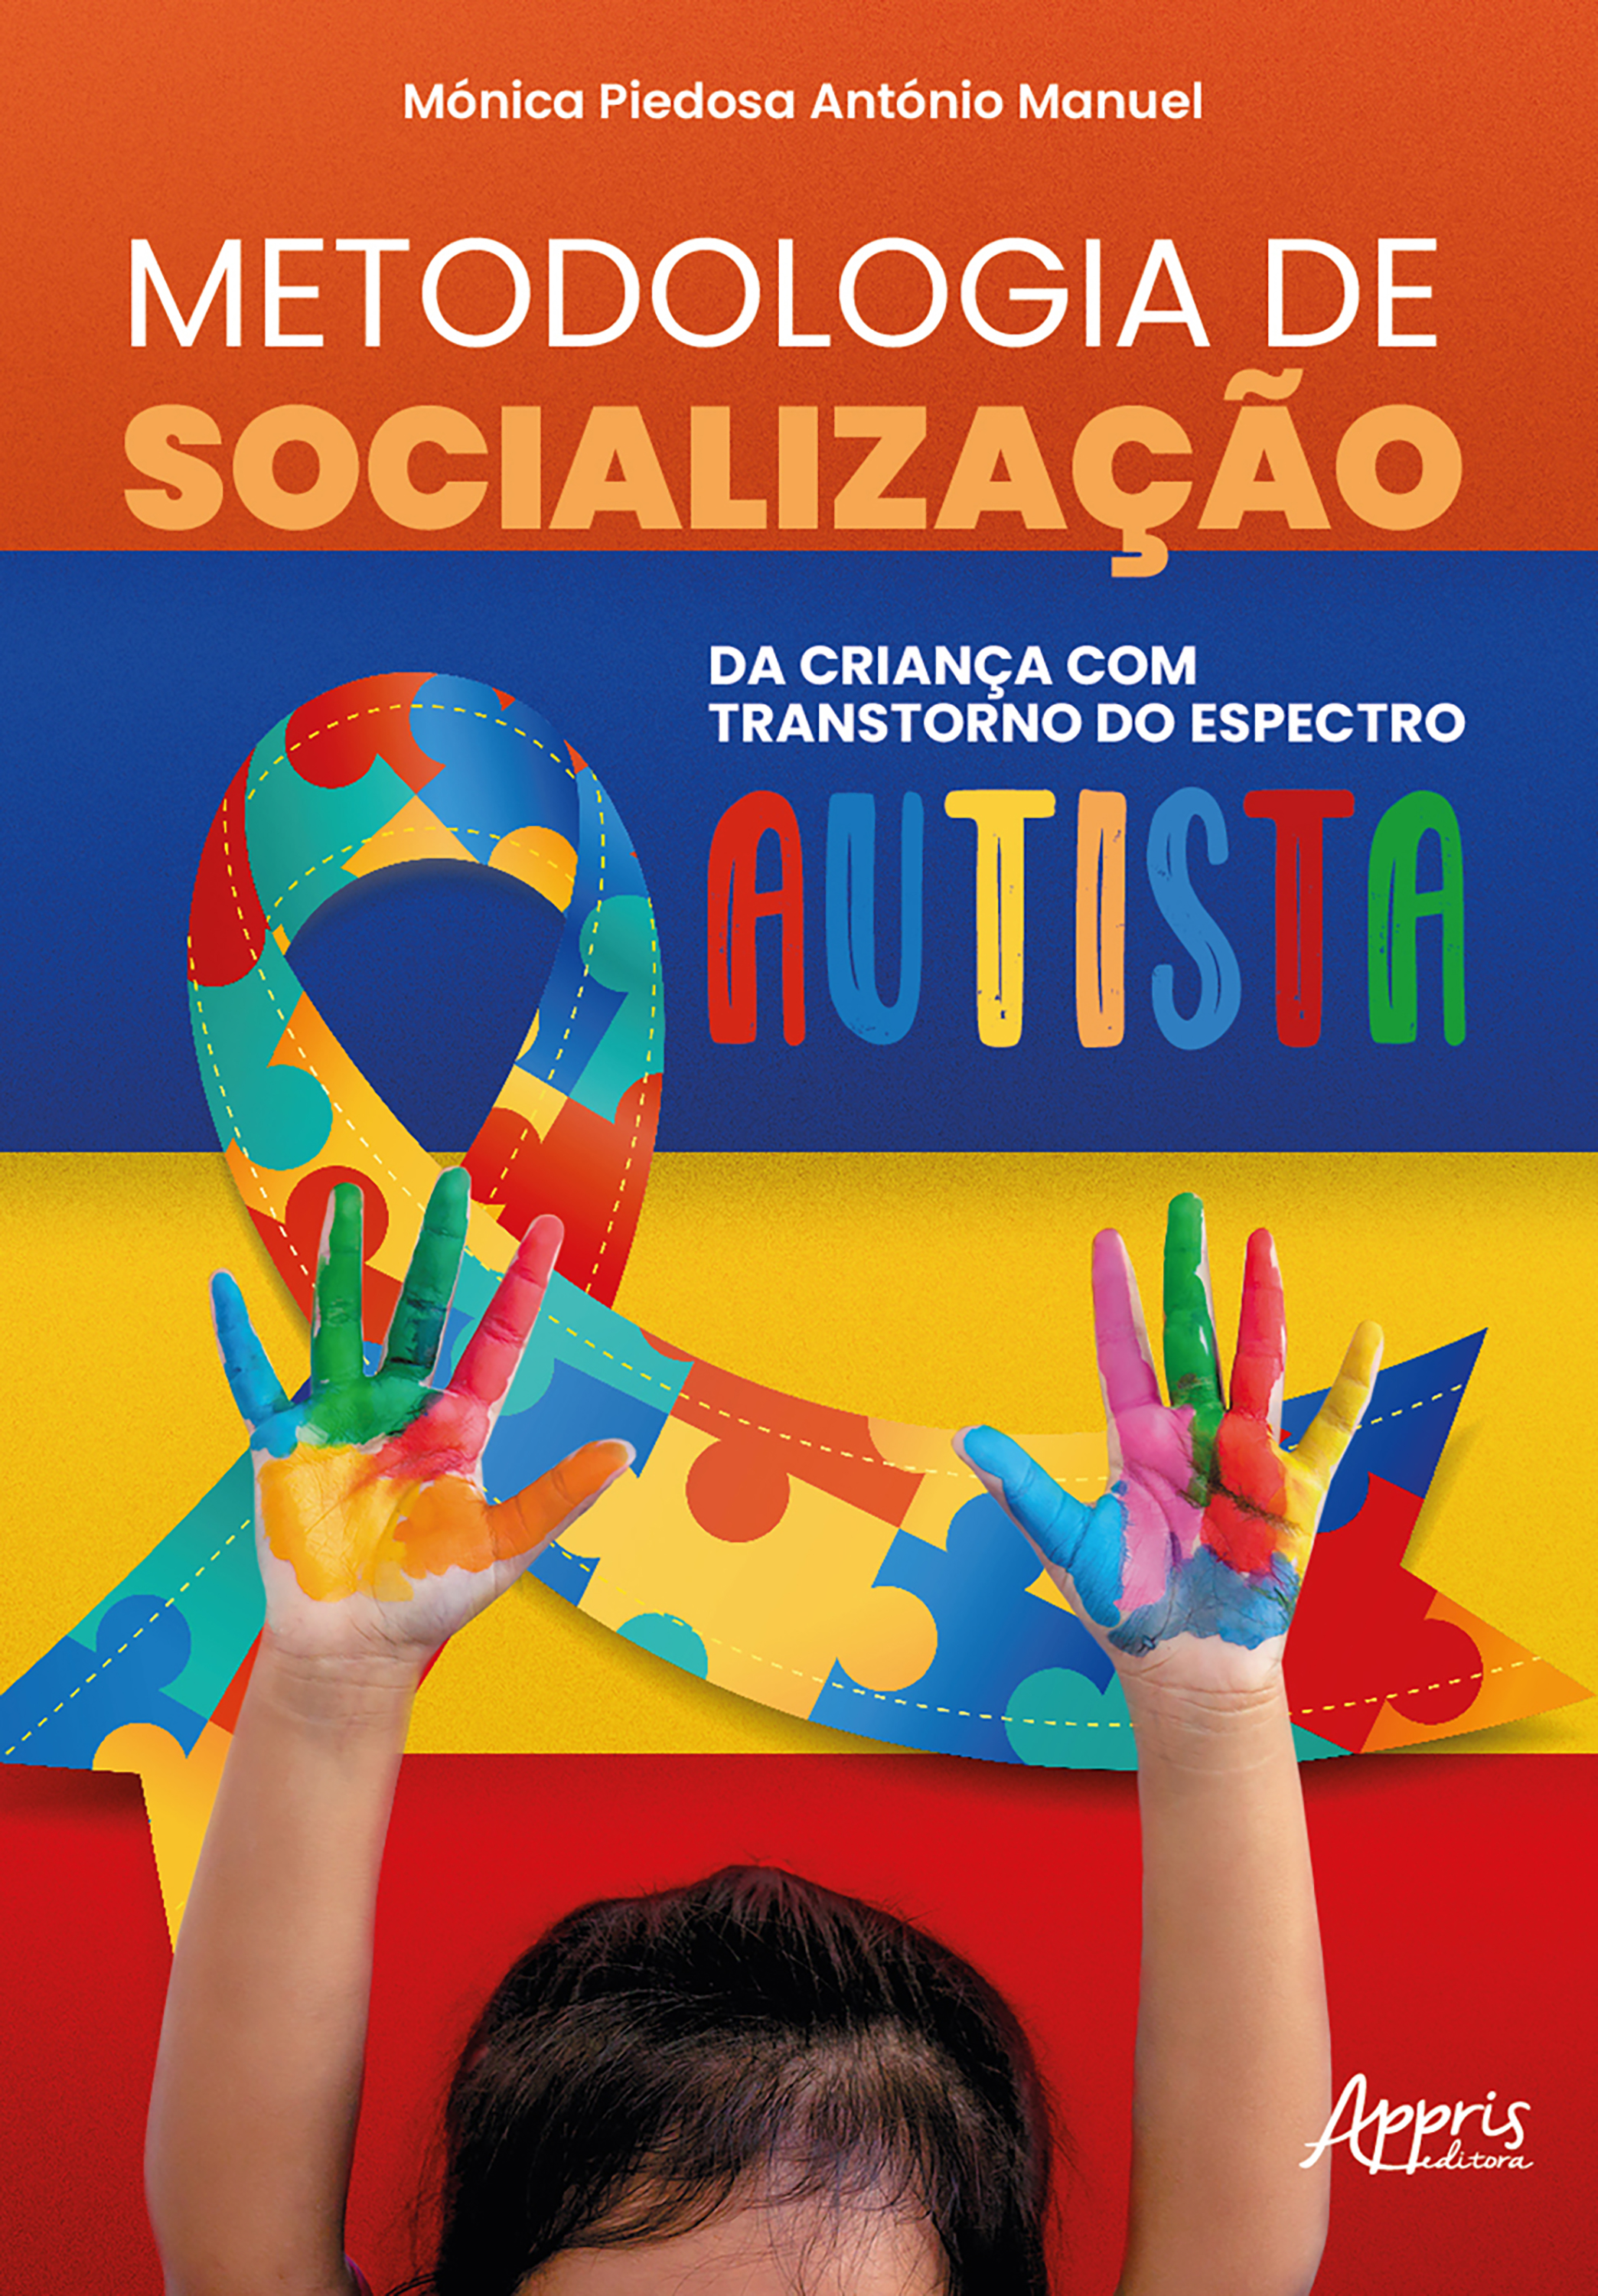 Metodologia de Socialização da Criança com Transtorno do Espectro Autista